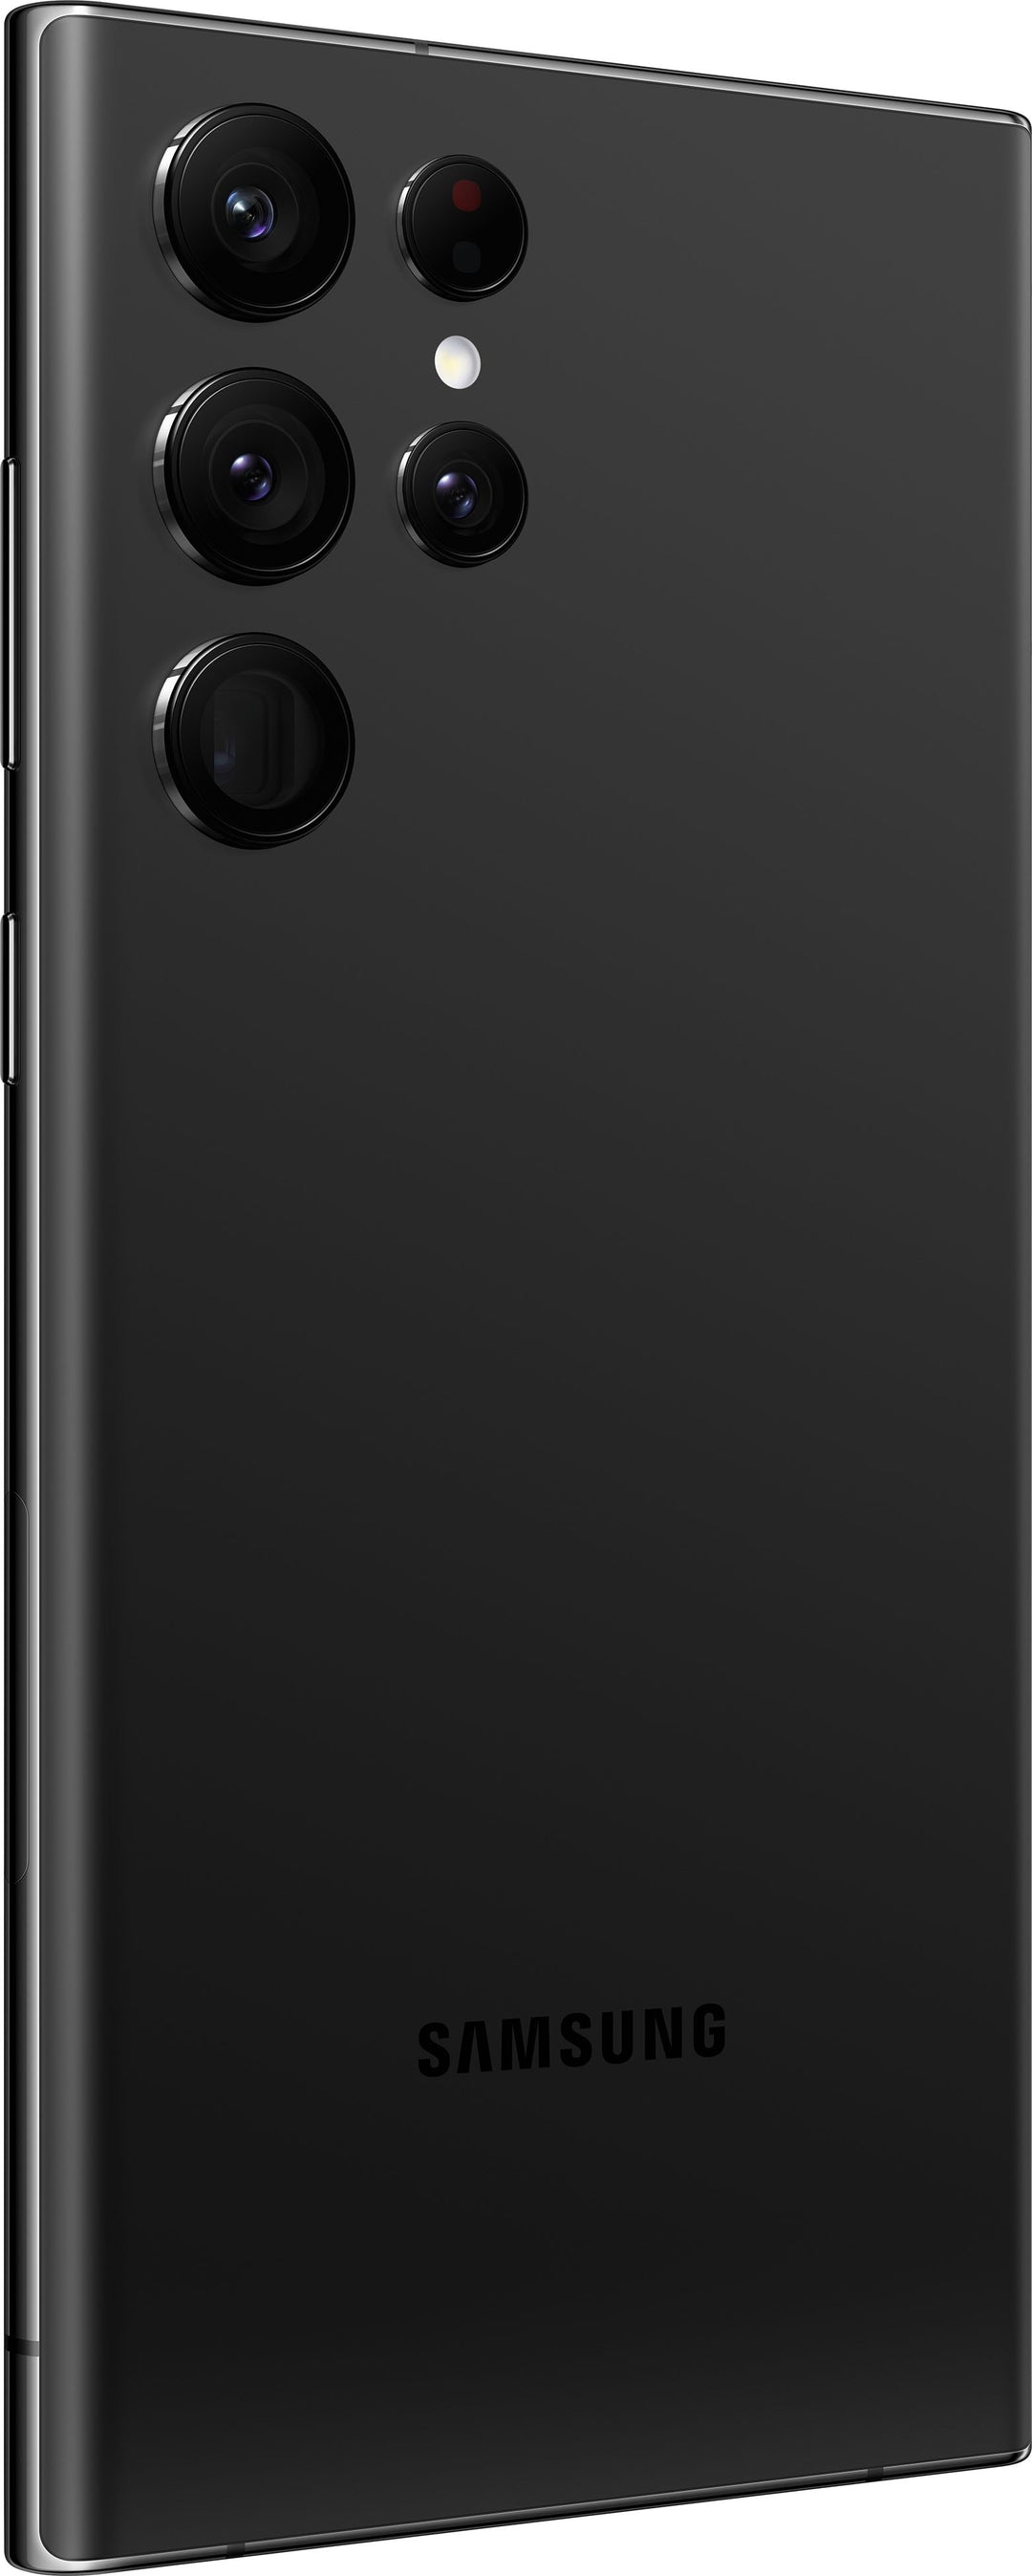 Samsung - Galaxy S22 Ultra 128GB - Phantom Black (Verizon)_11